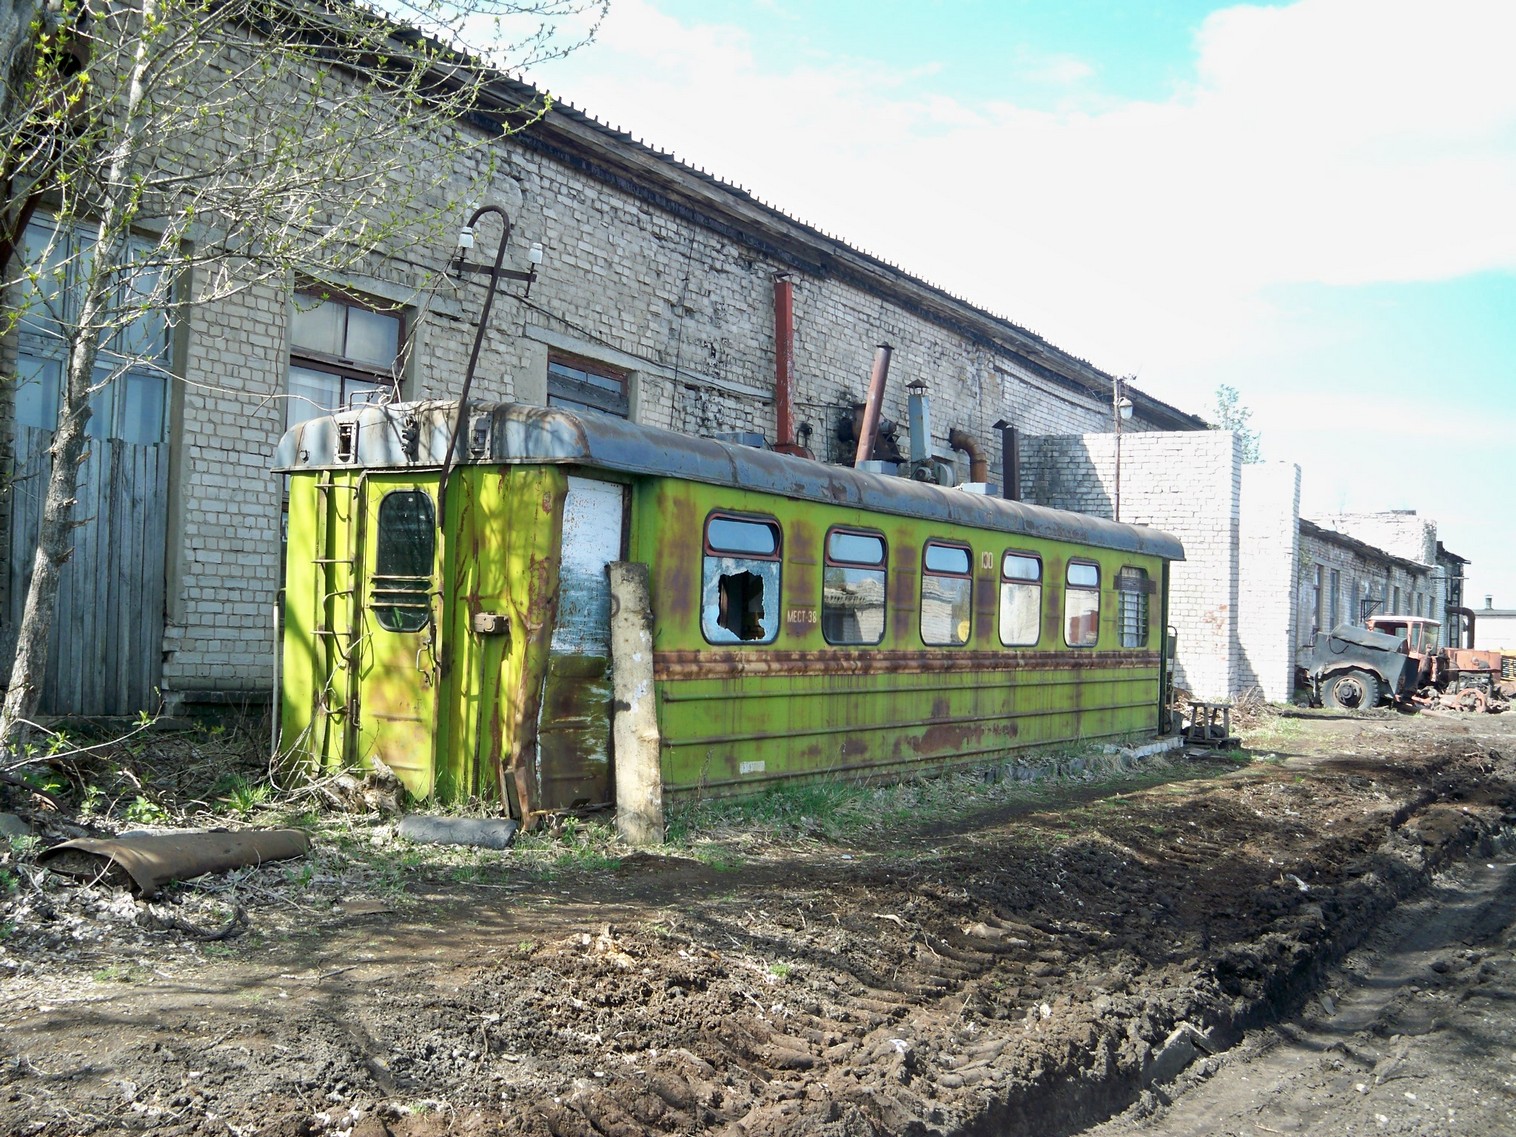 Узкоколейная железная дорога Васильевского предприятия промышленного железнодорожного транспорта  — фотографии, сделанные в 2014 году (часть 16)